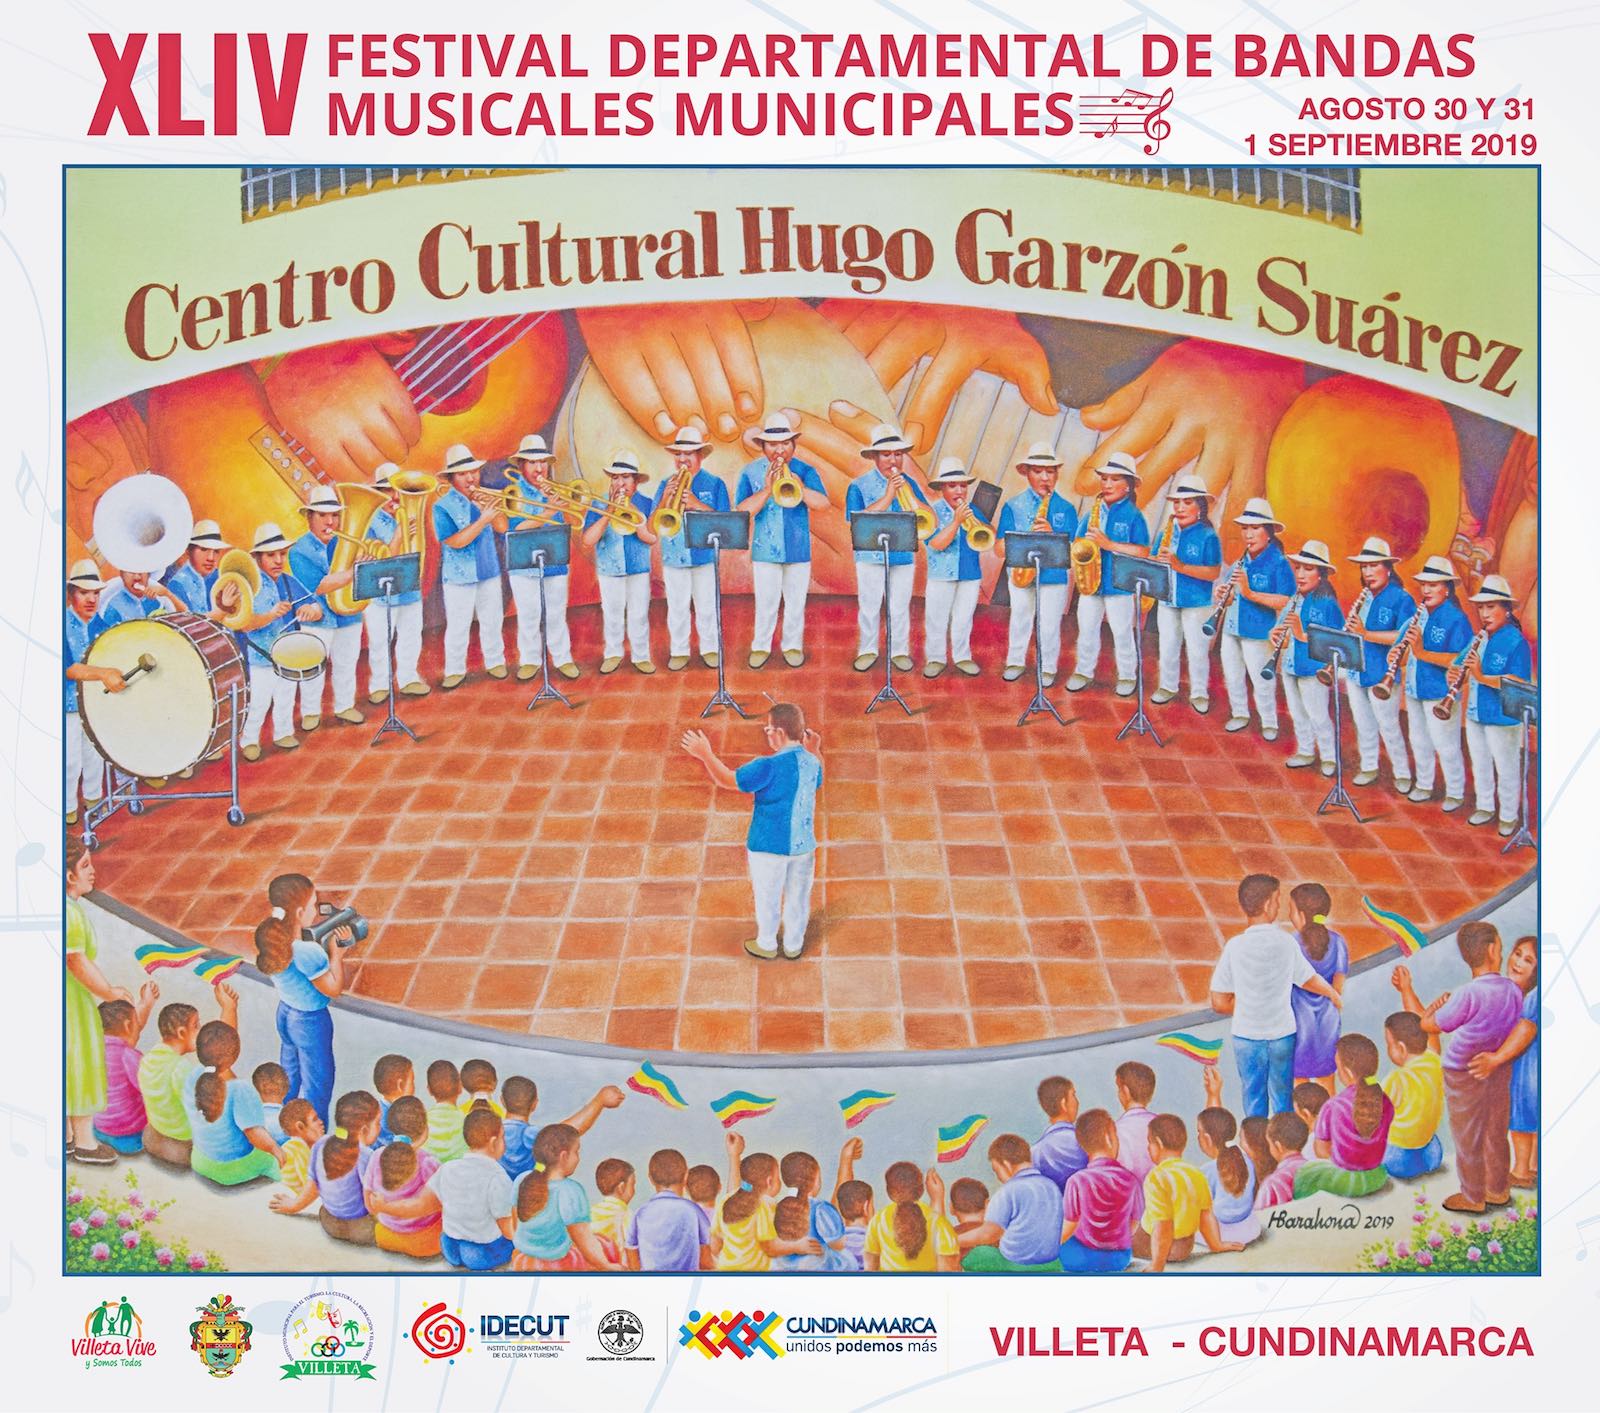 Programación del Festival departamental de Bandas Musicales de Villeta 2019